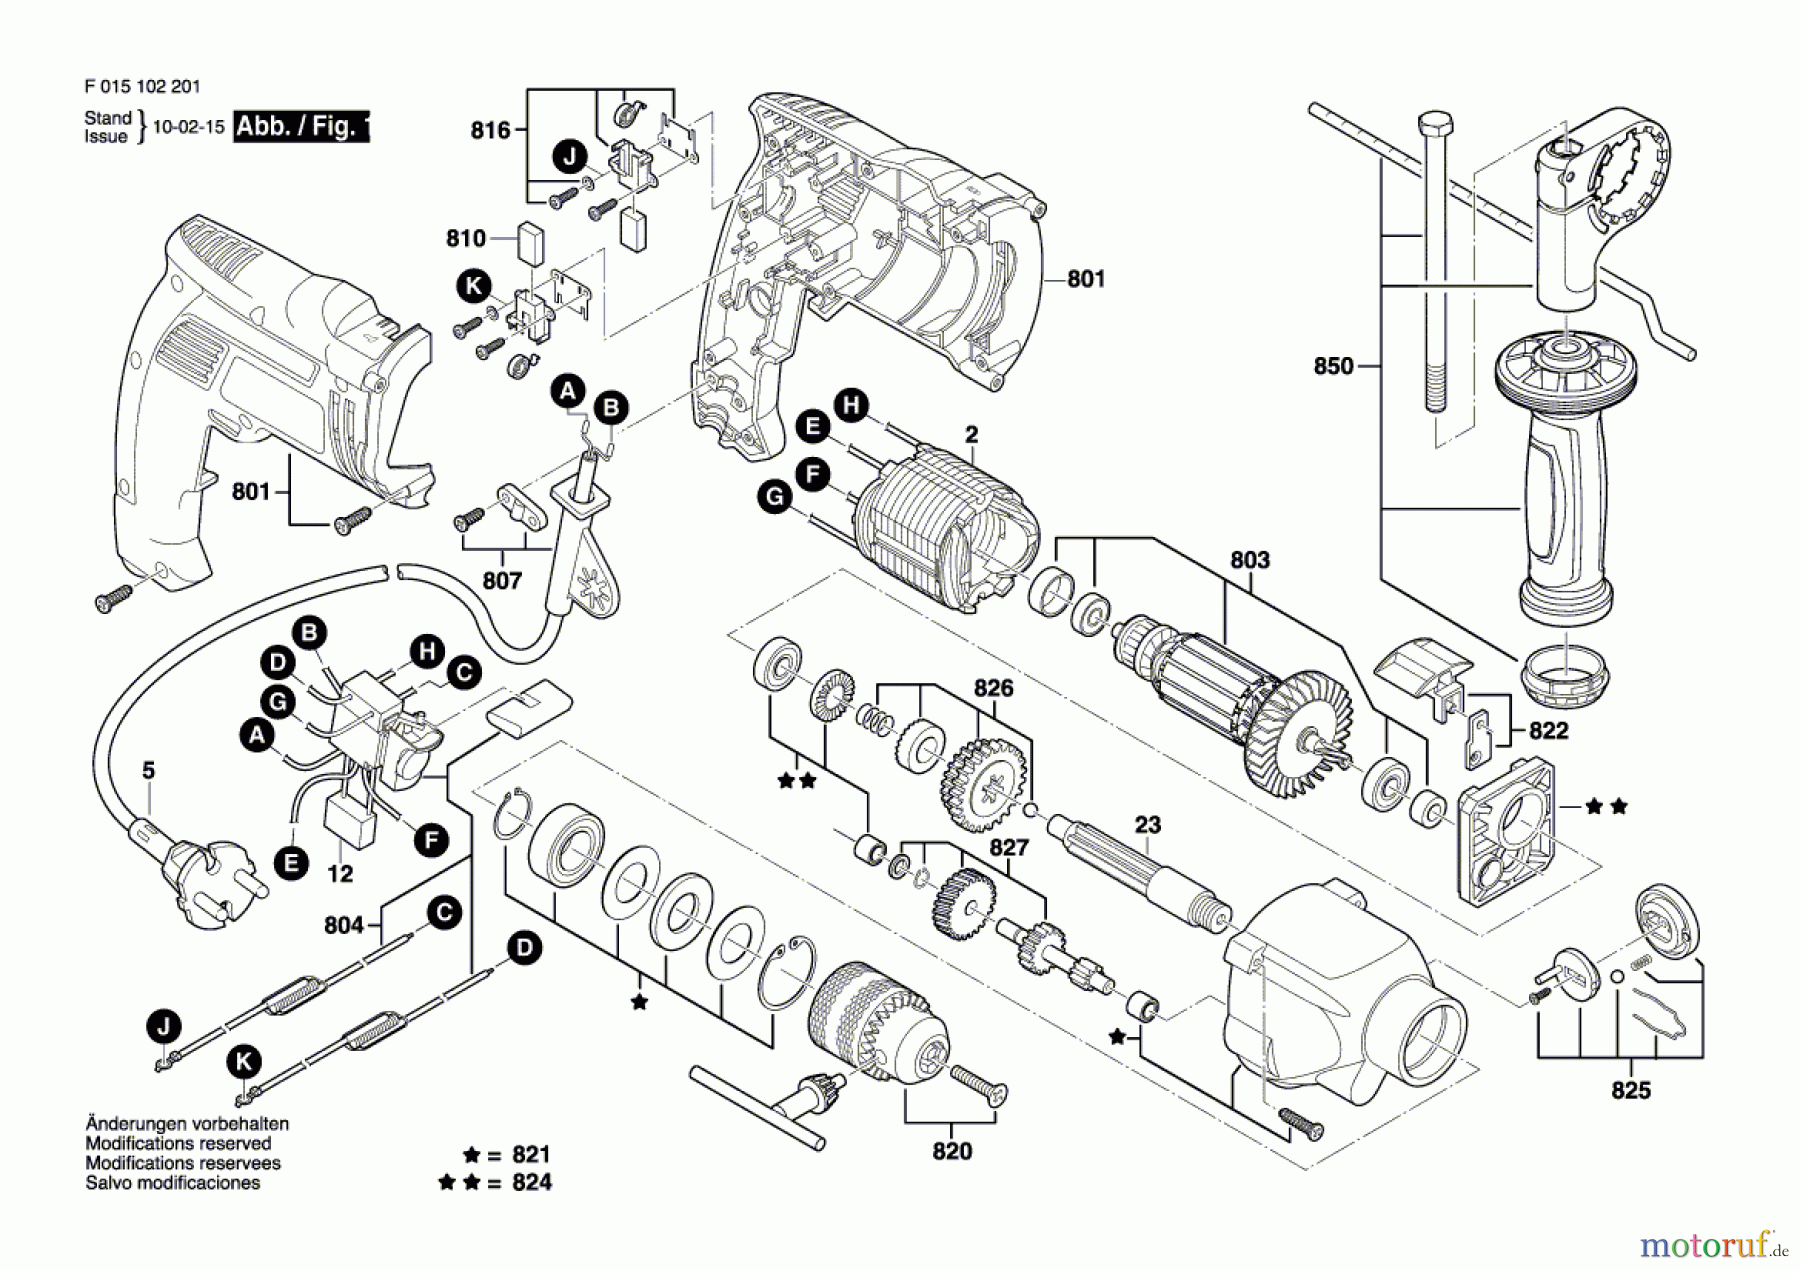  Bosch Werkzeug Schlagbohrmaschine 1022 Seite 1